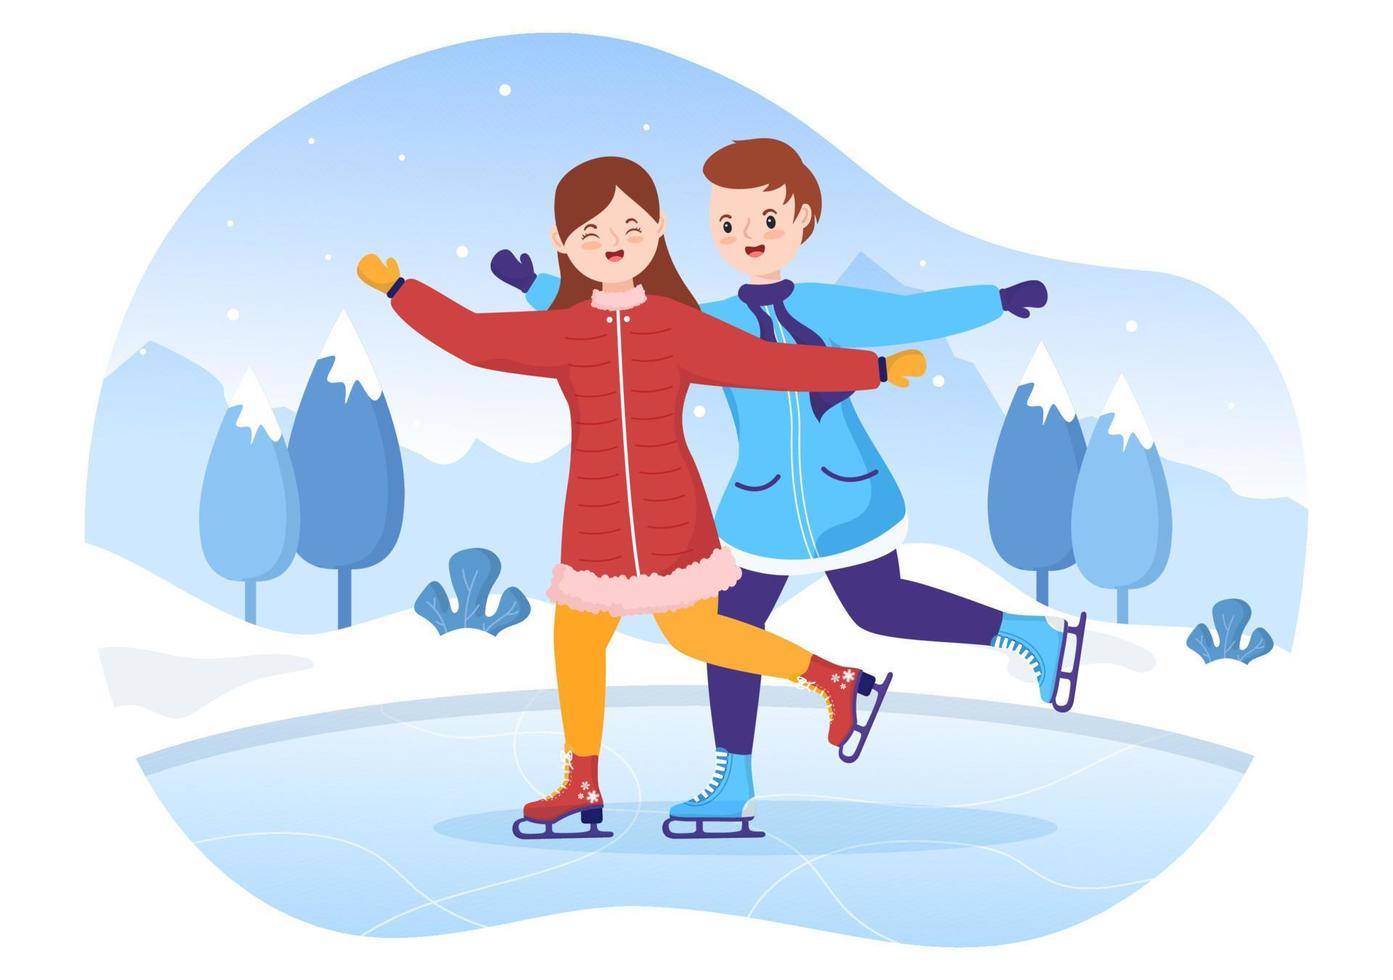 patinação no gelo ilustração plana de desenhos animados desenhados à mão de atividades esportivas ao ar livre de diversão de inverno na pista de gelo com roupas sazonais vetor